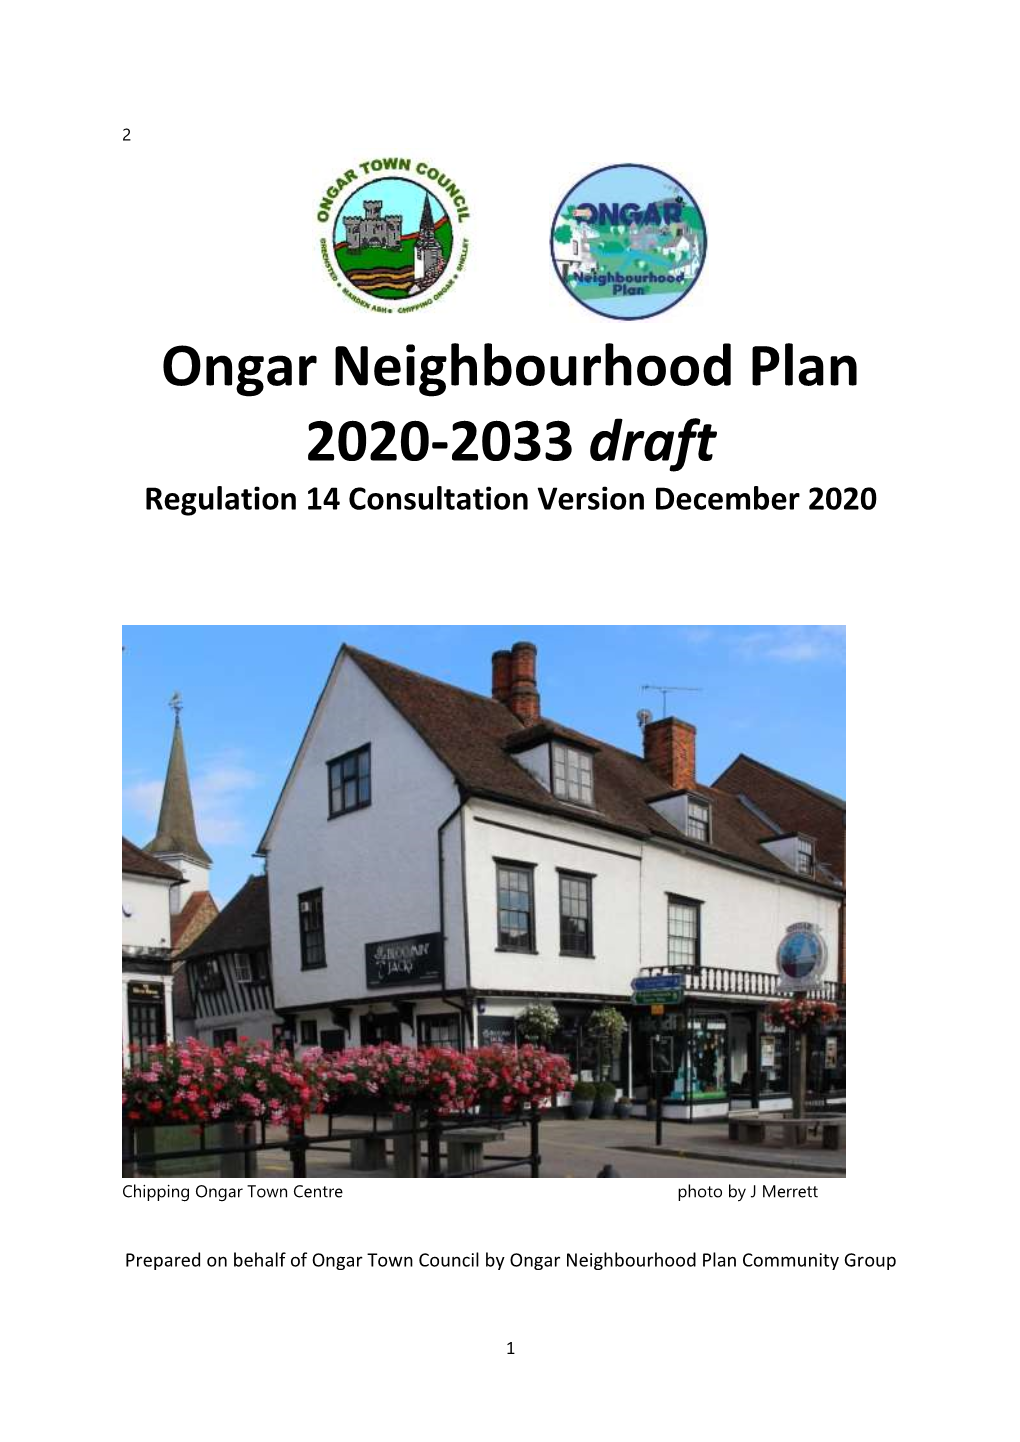 Ongar Neighbourhood Plan 2020-2033 Draft Regulation 14 Consultation Version December 2020